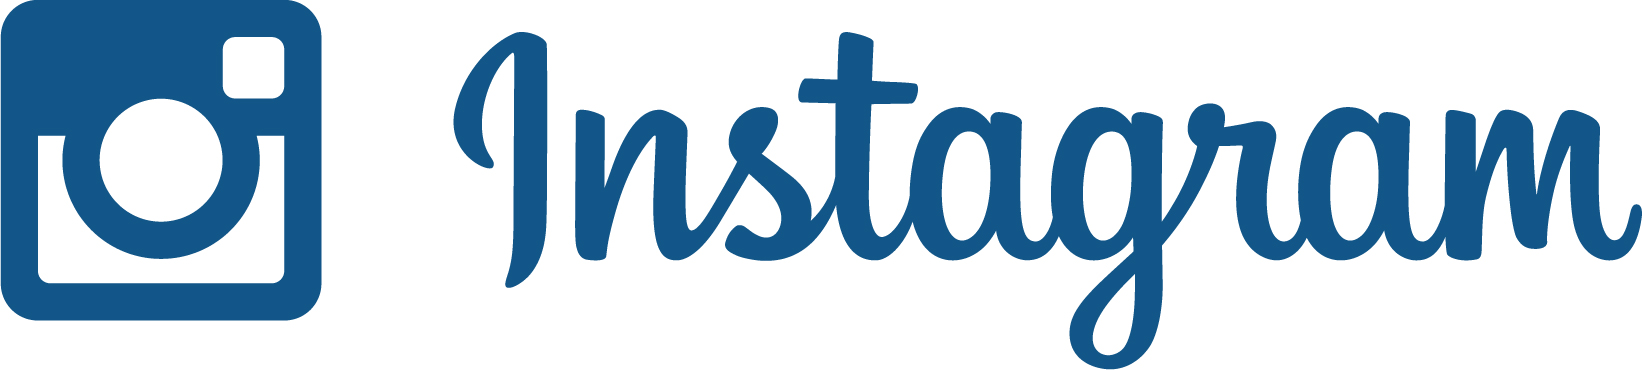 Instagram_logo.jpg